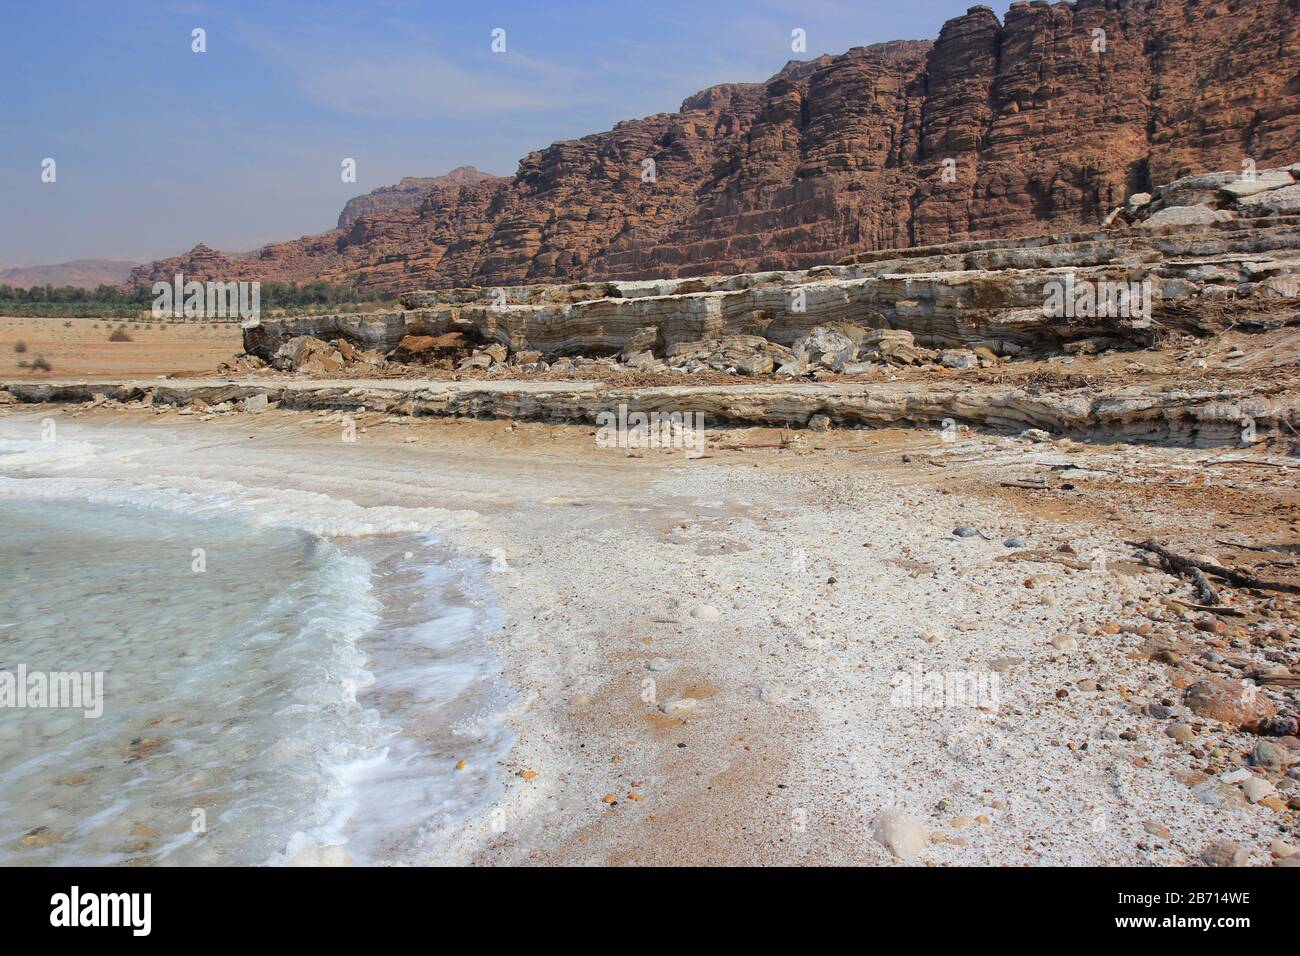 Littoral de la route de la mer Morte, zone d'altitude la plus basse sur Terre, Jordanie, Asie occidentale Banque D'Images